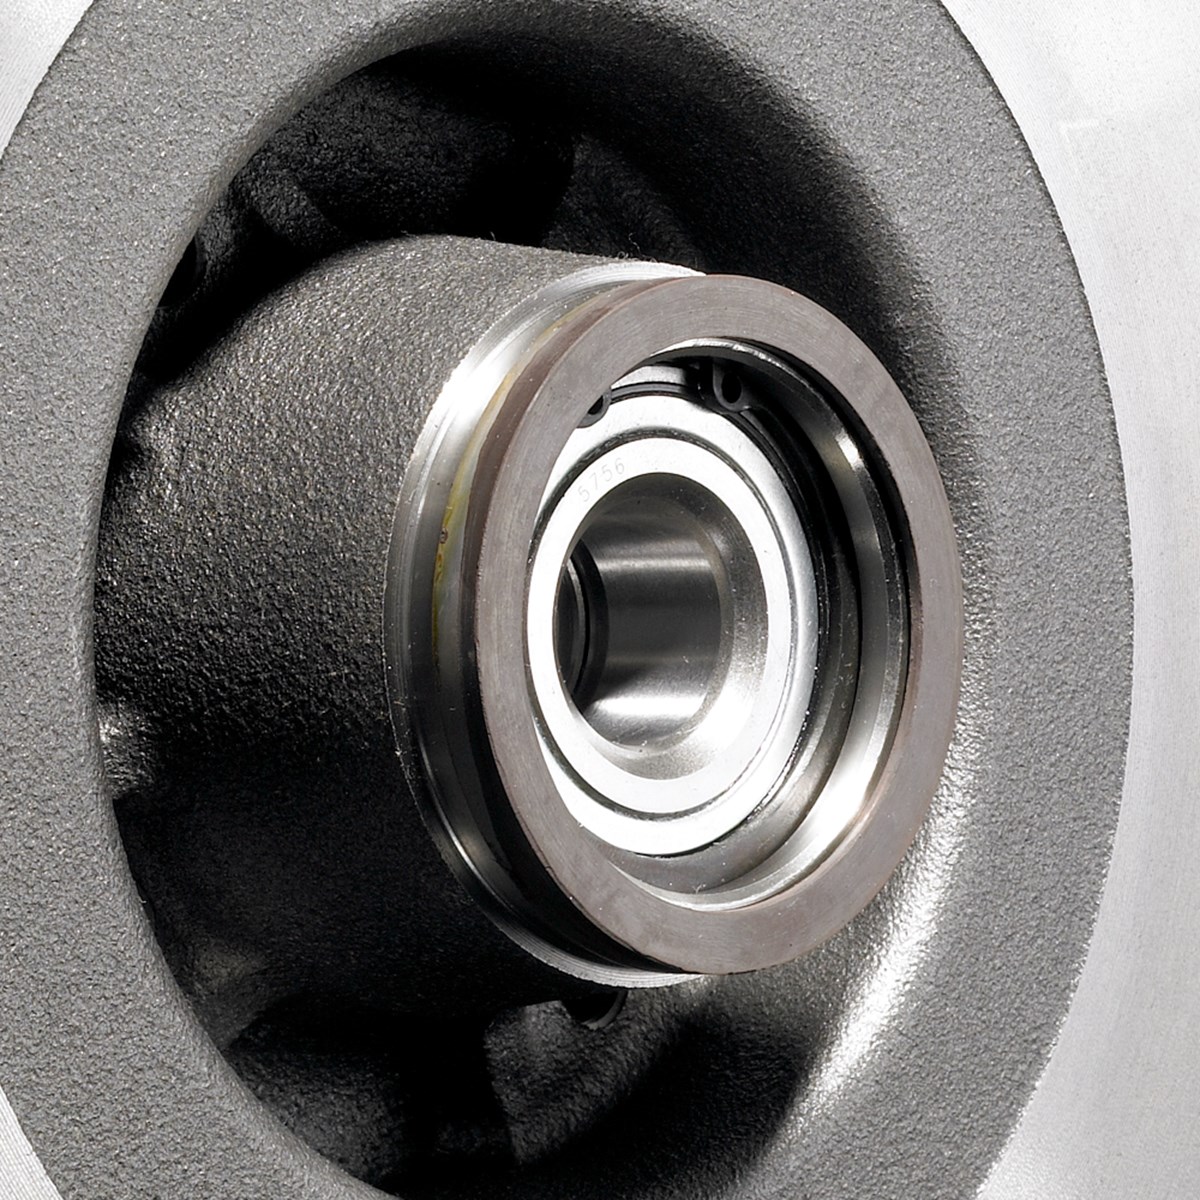 Discos de freno con rodamientos de rueda integrados - vista detallada